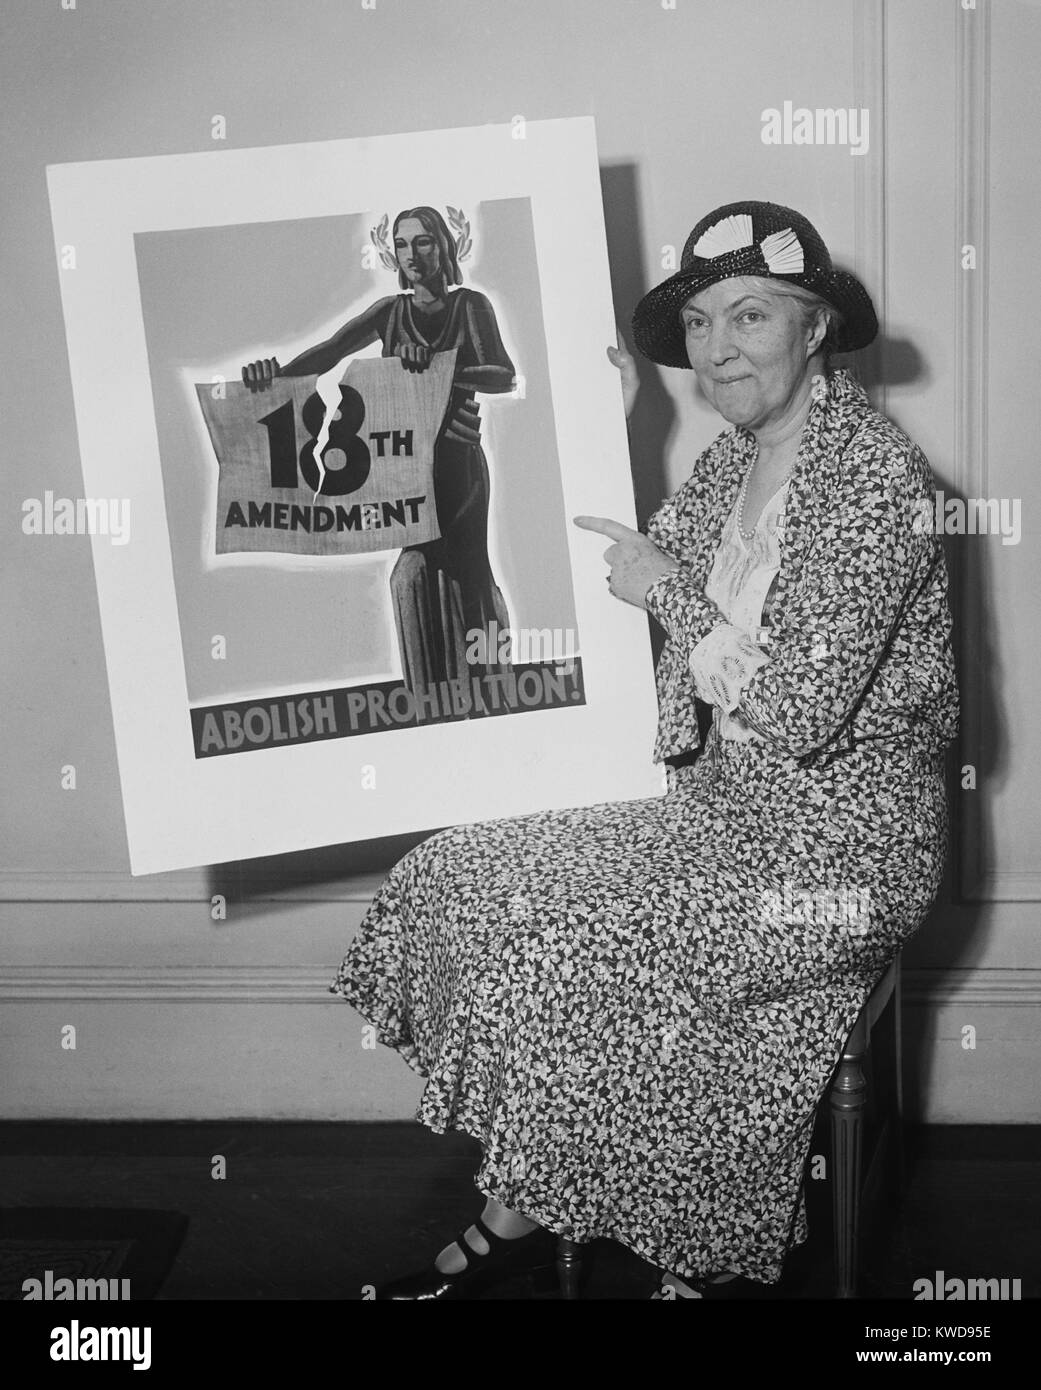 Frau mit einem Plakat 1931' Abschaffen Verbot!" im Jahr 1933 Mitgliedstaat Konventionen ratifiziert, das einundzwanzigste Änderung, die aufgehobene Verbot (BSLOC 2016 8 74) Stockfoto